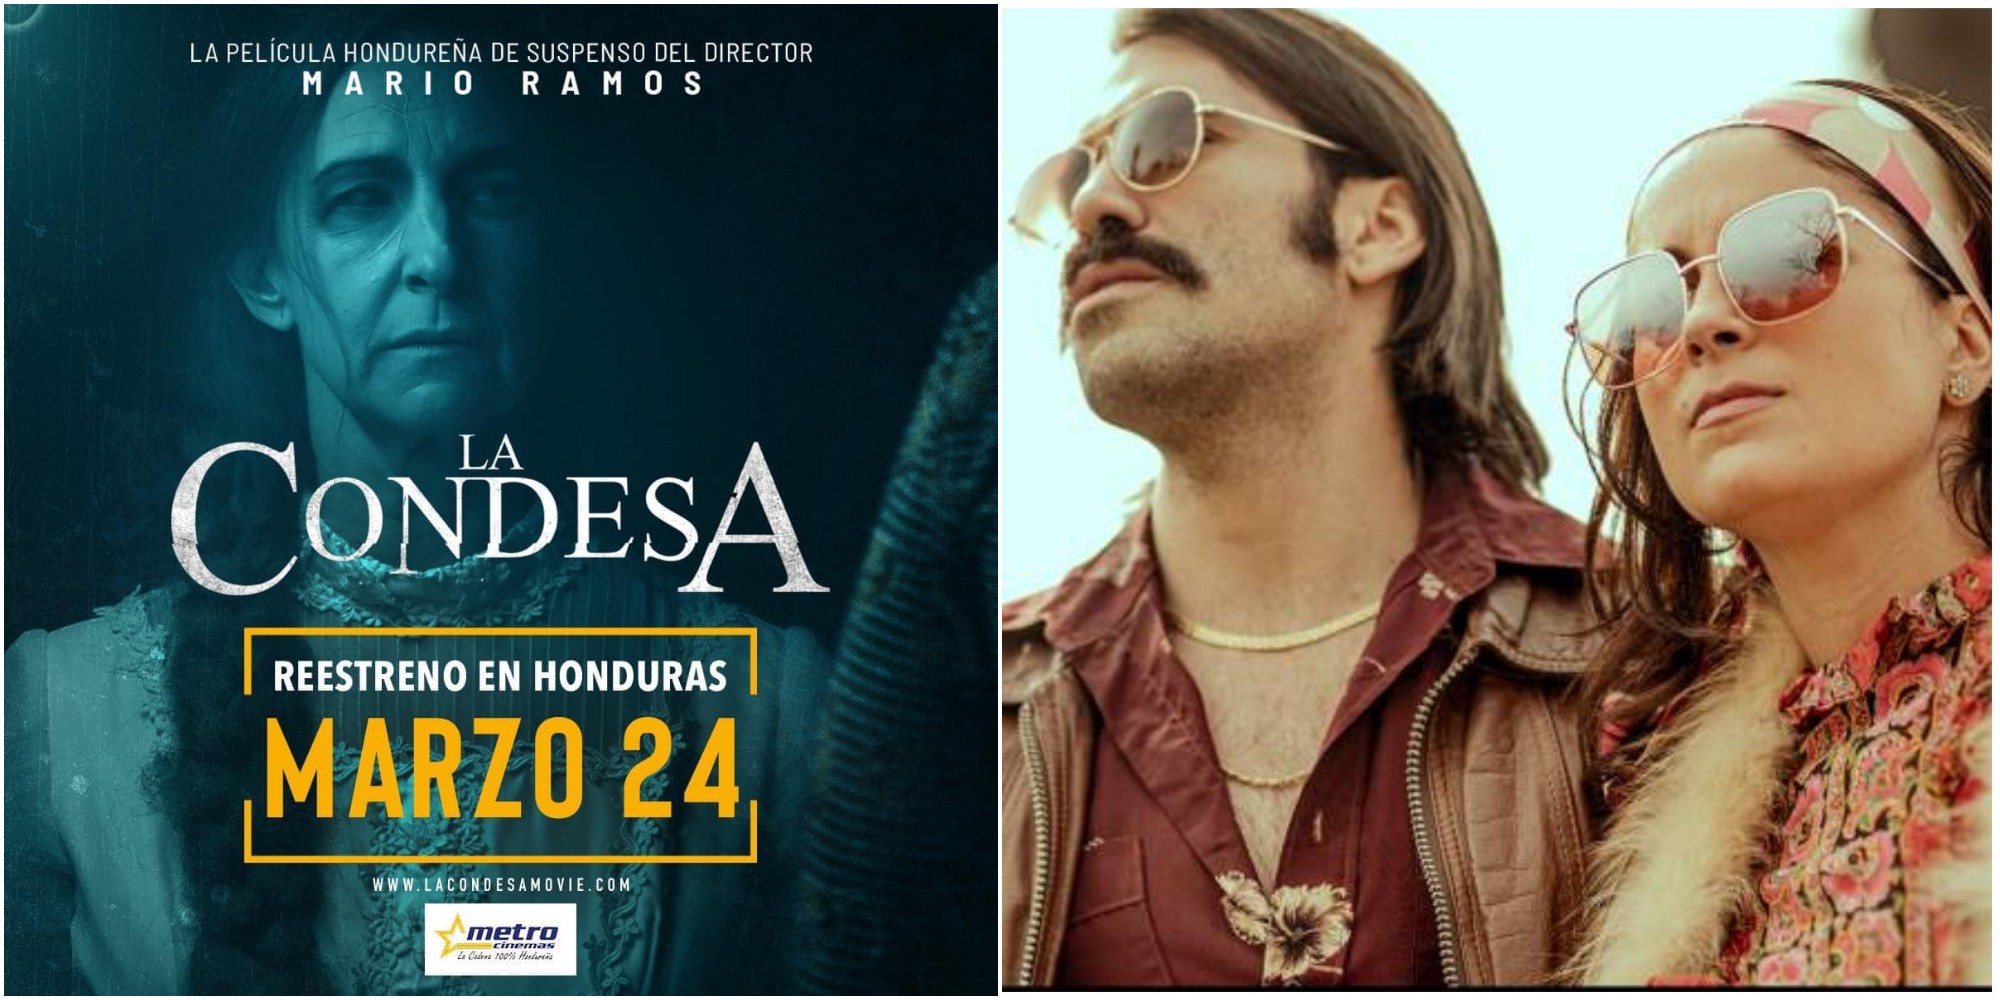 Película hondureña La Condesa se estrena mañana en cines de Honduras